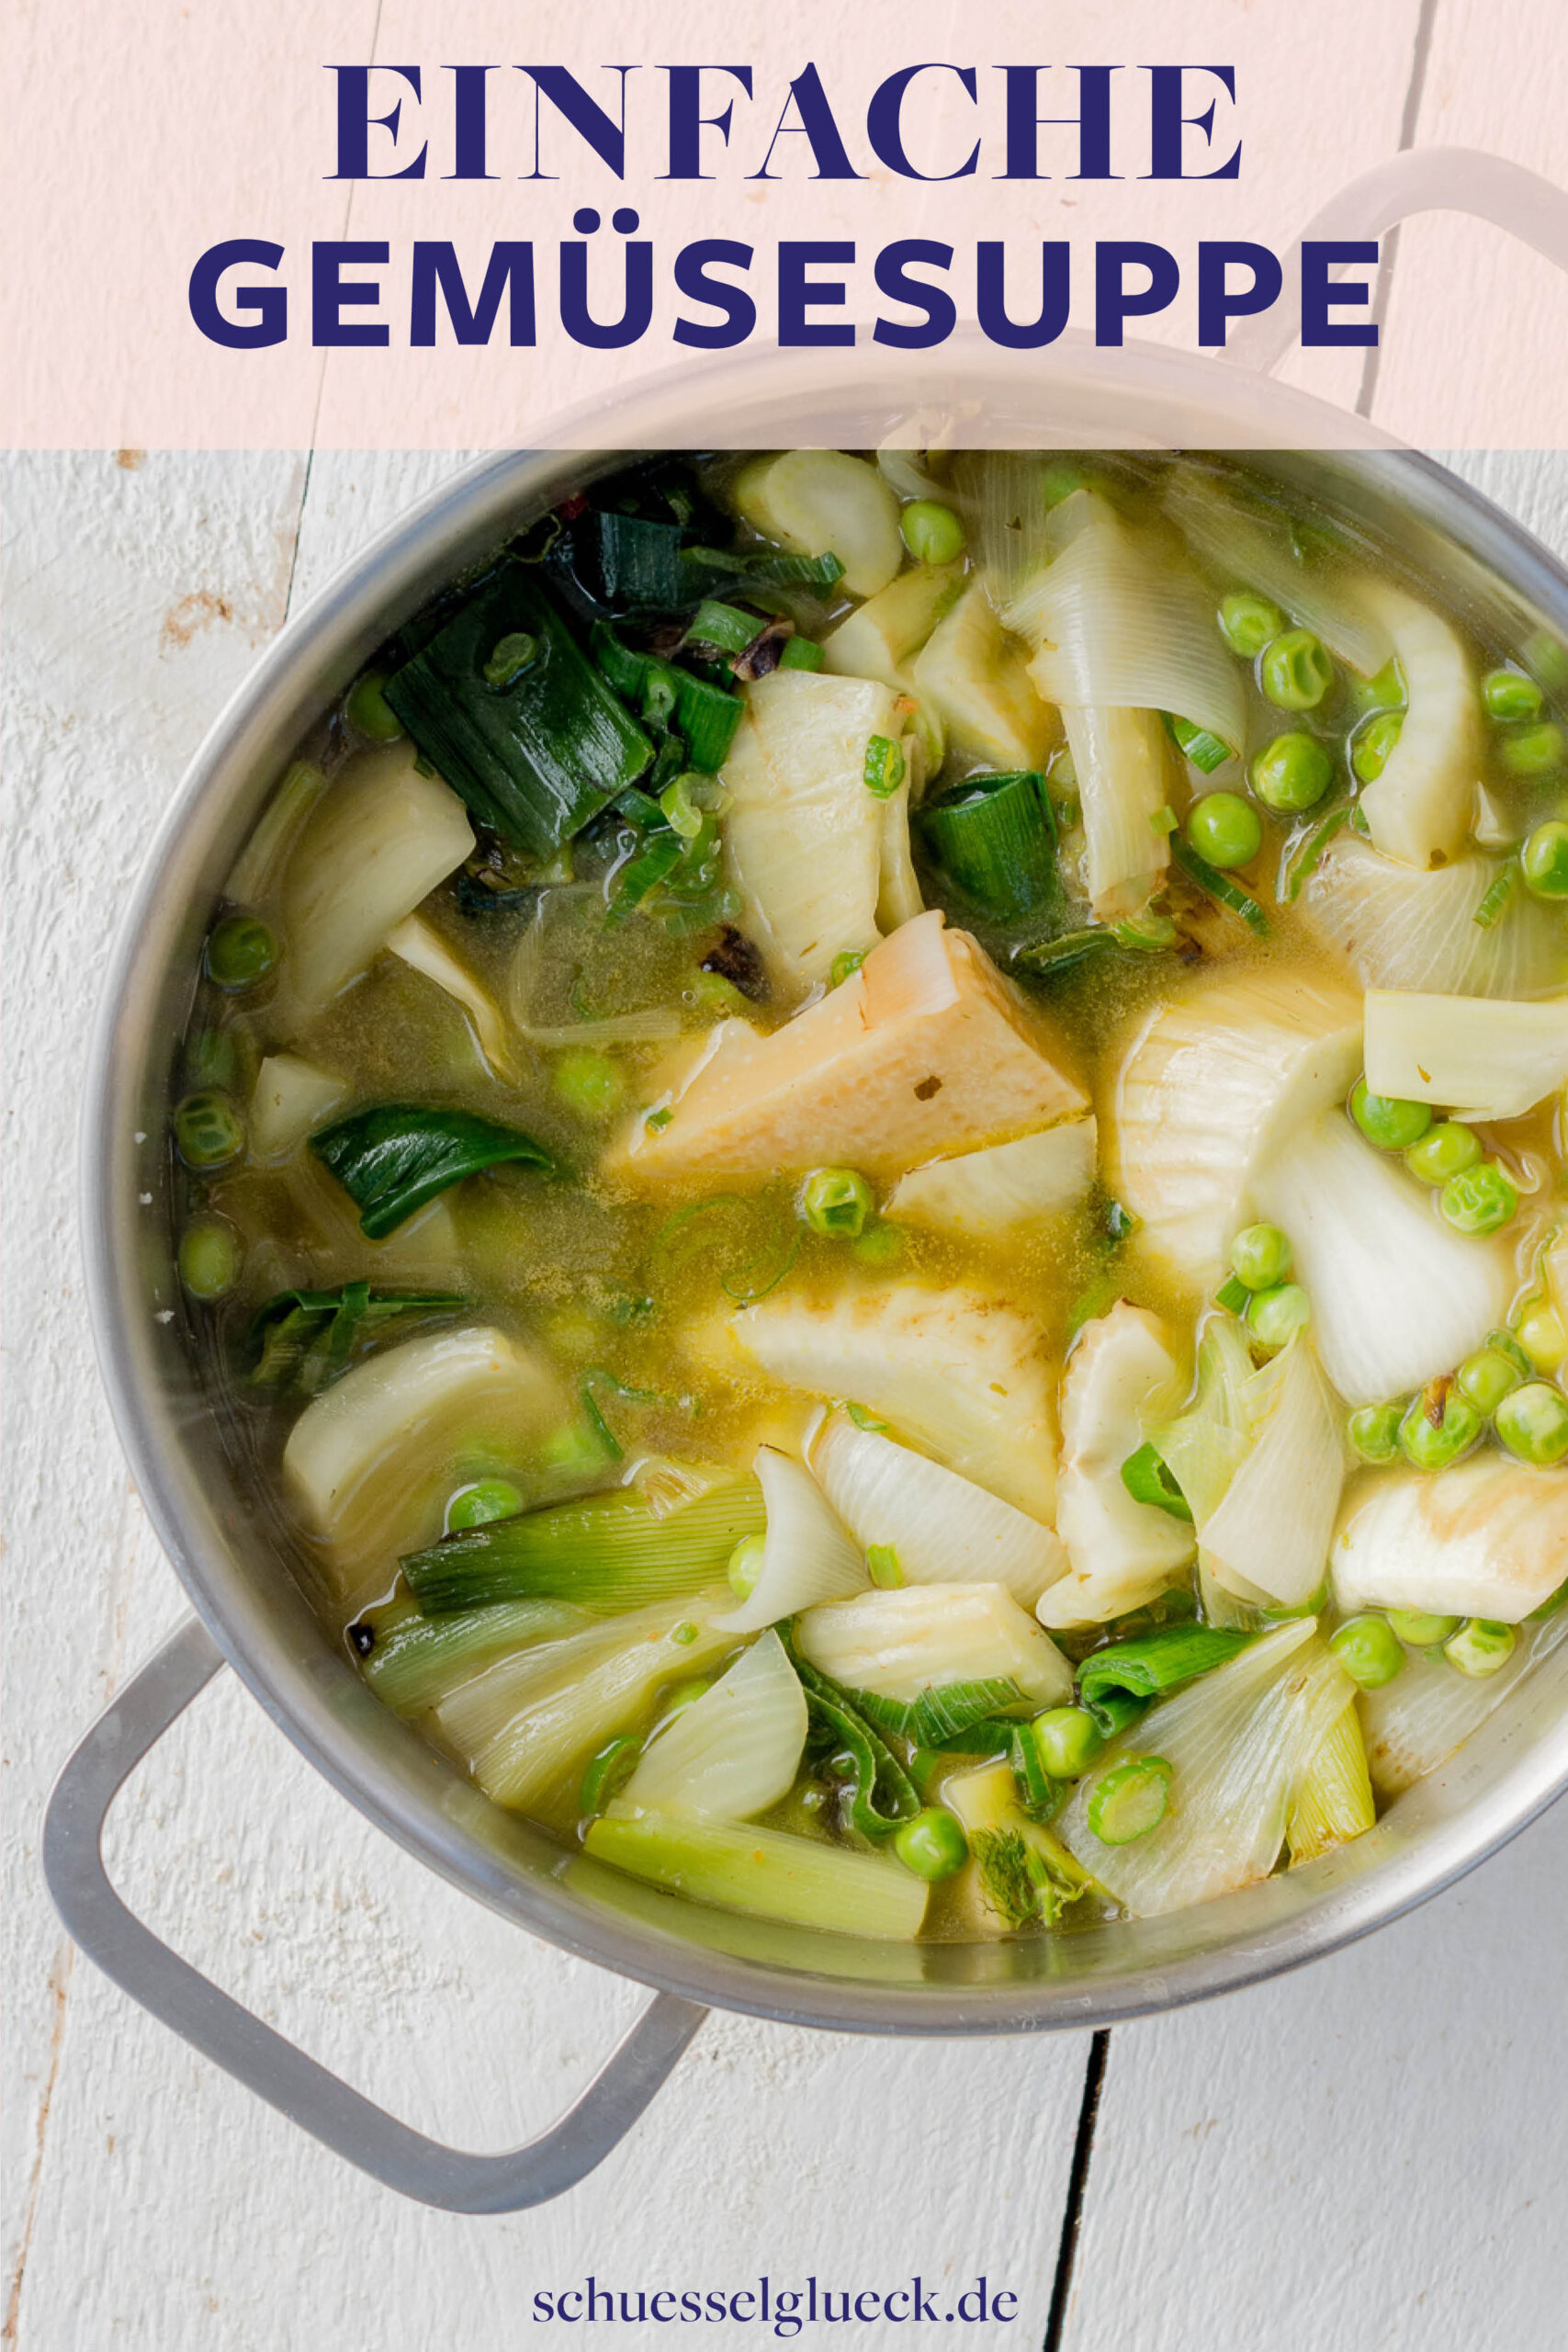 Einfache, grüne Gemüsesuppe mit Parmesan – perfekt zur Resteverwertung!